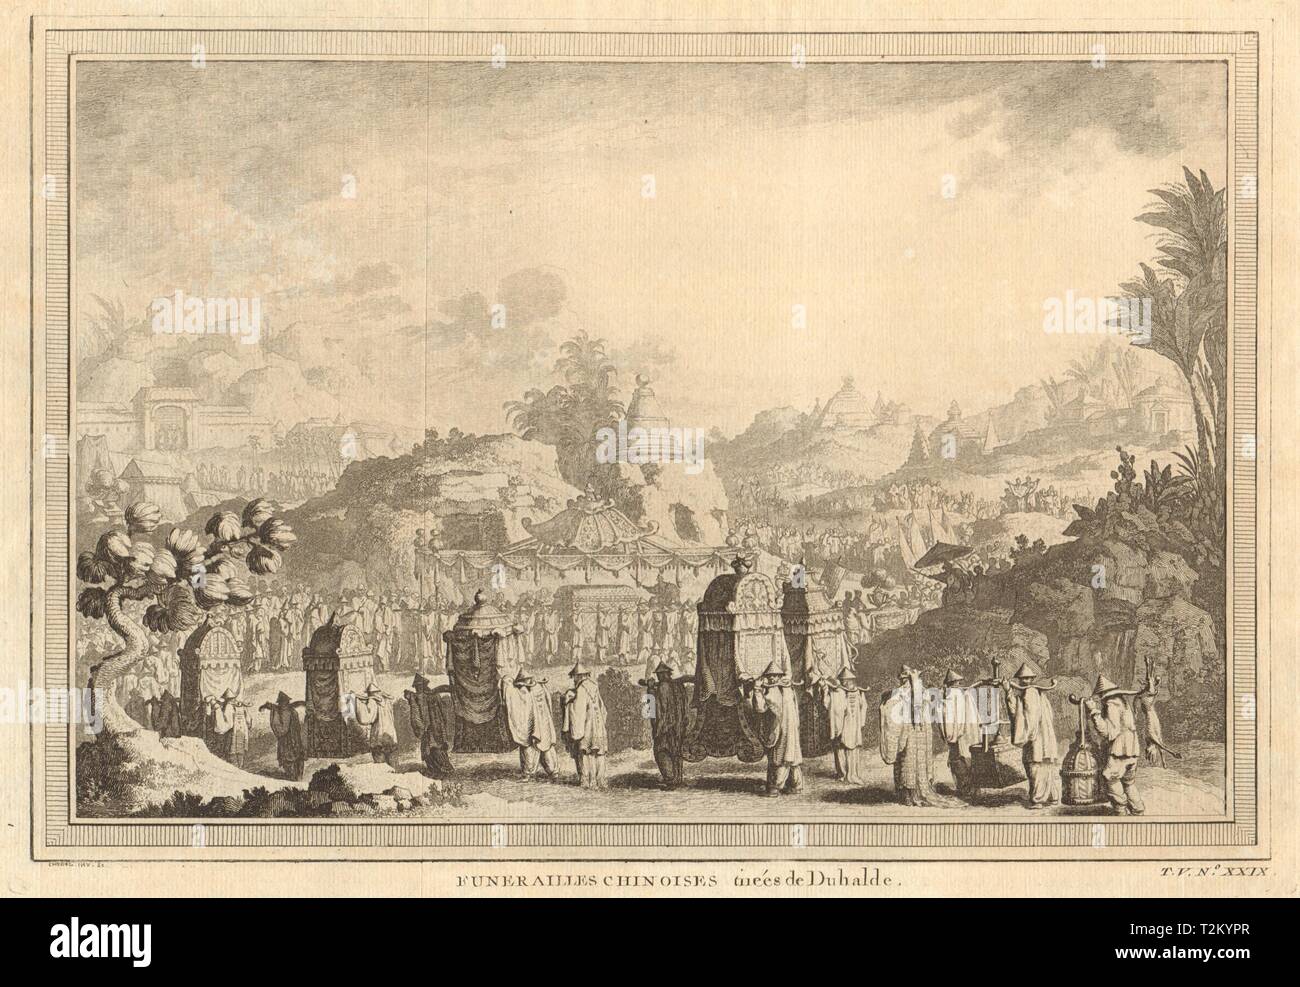 Funerailles 'Chinoises'. La Chine. Un salon funéraire chinois. Jiao chaises 1748 Banque D'Images